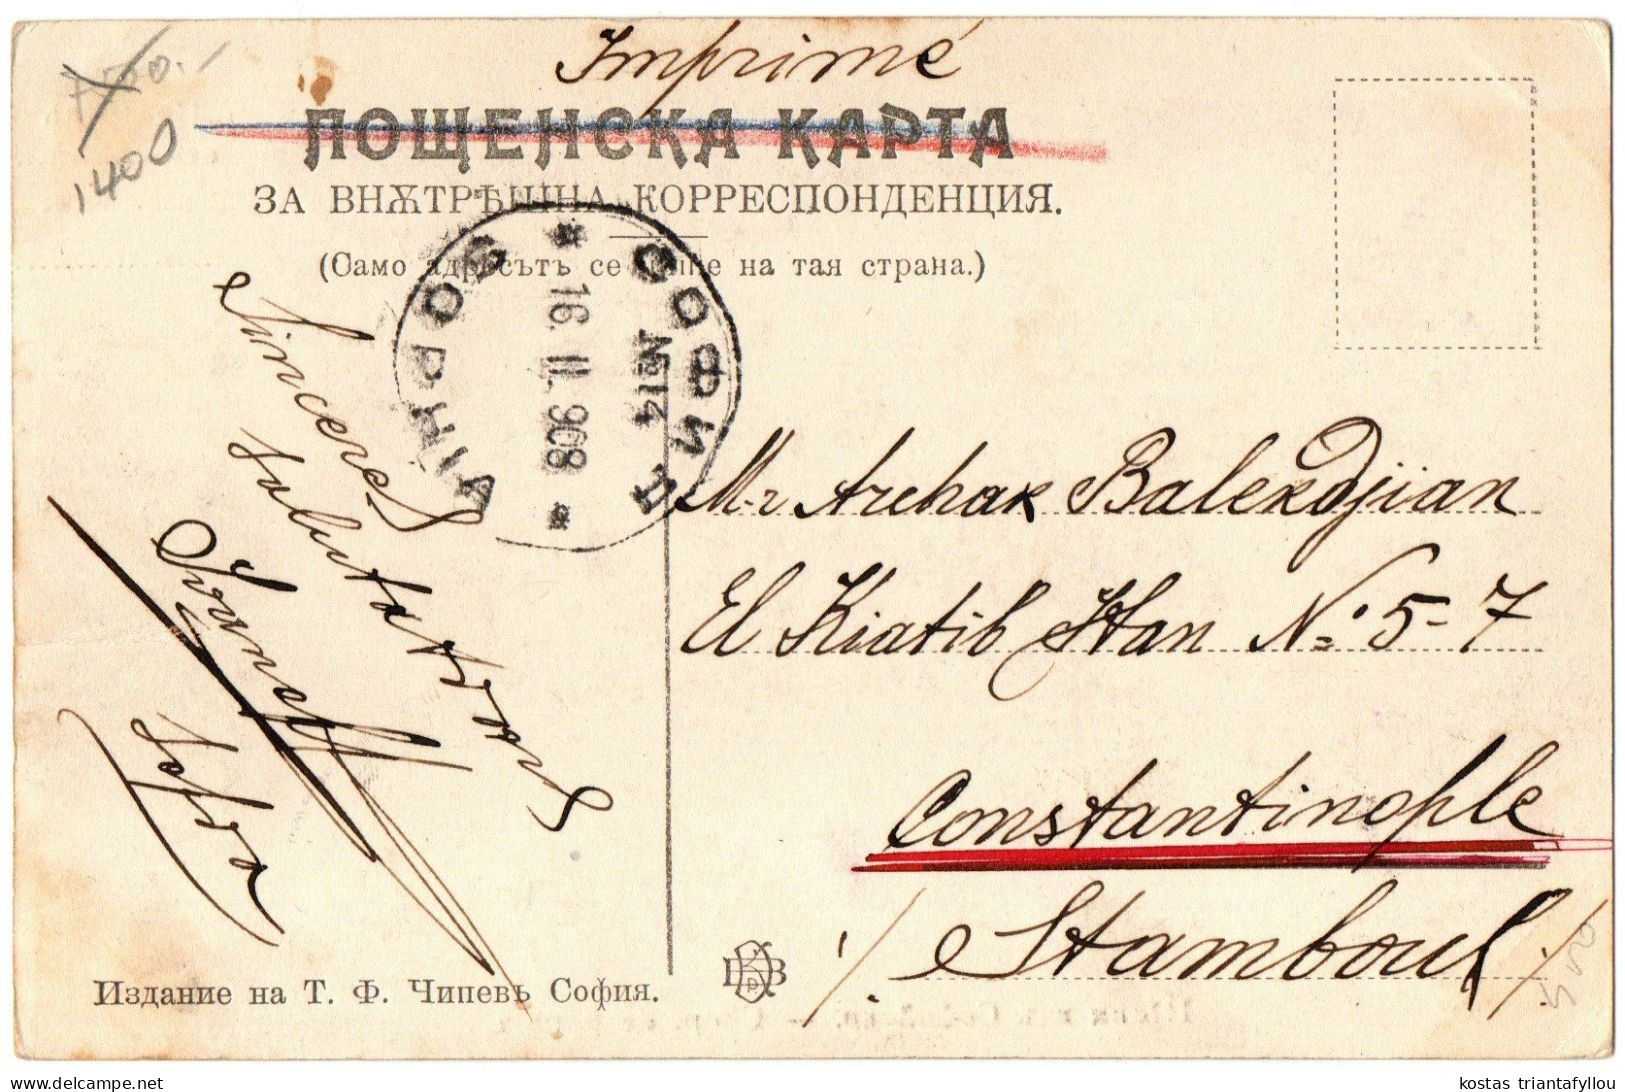 1.2.1 BULGARIA, SOPHIA, CHOPI DE SOPHIA, 1908, POSTCARD - Bulgaria